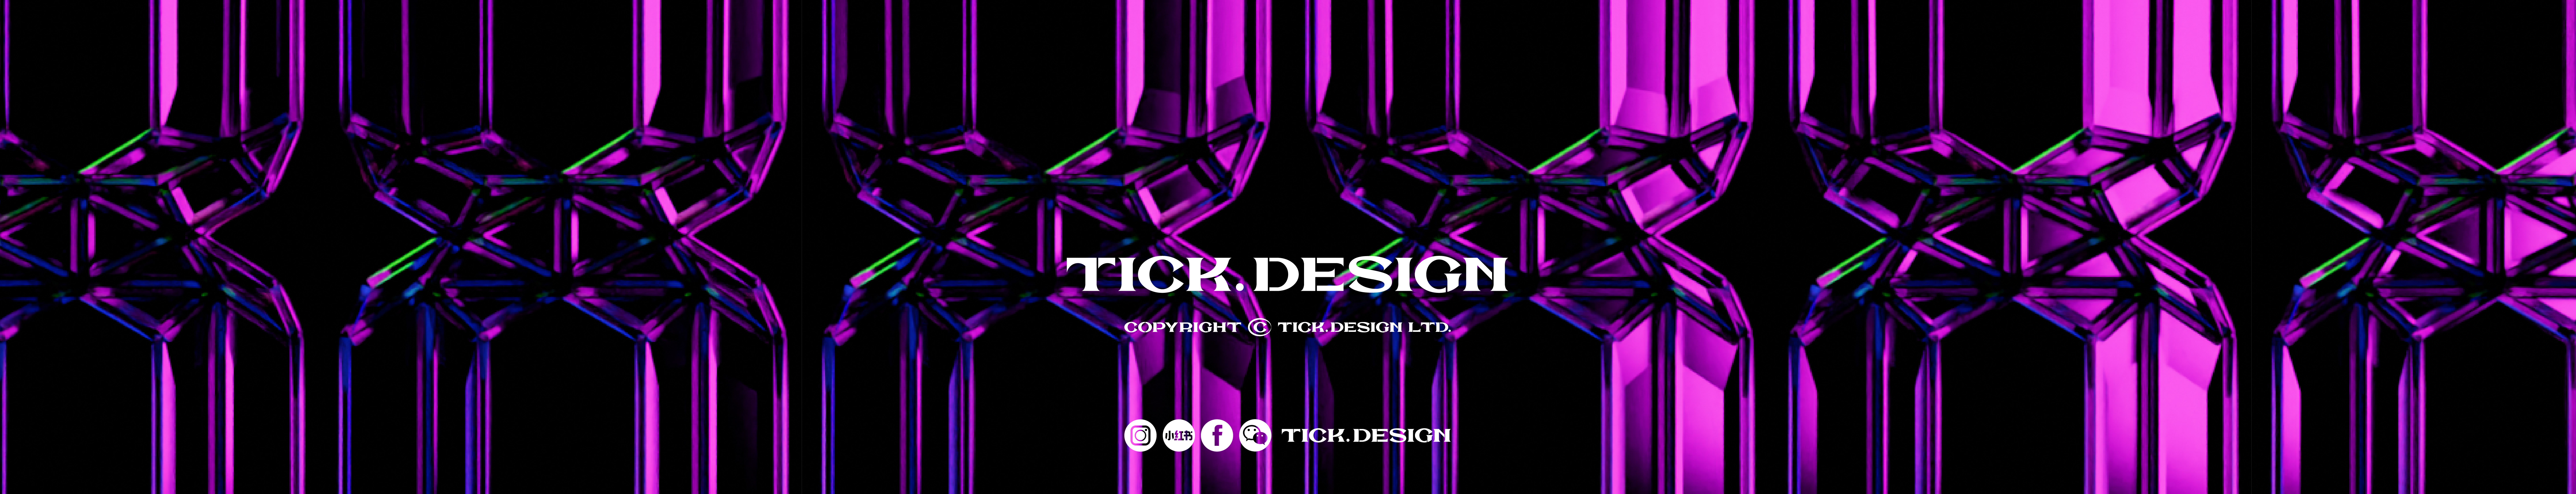 TICK. DESIGN's profile banner